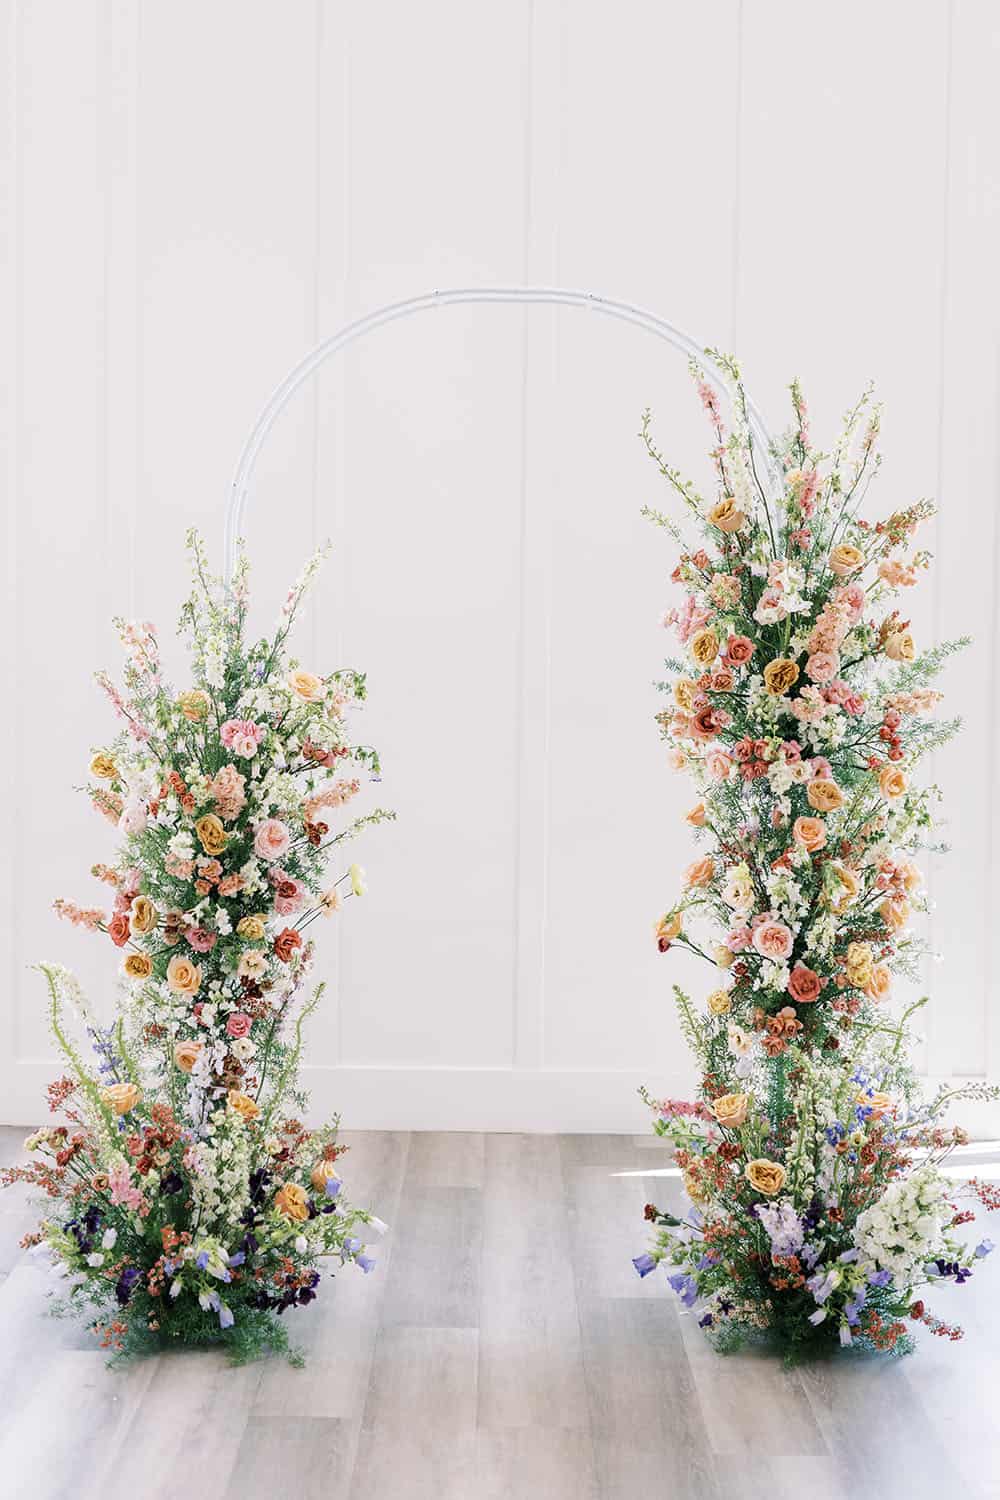 Utah Wedding Inspired By Dutch Still Life Flowers